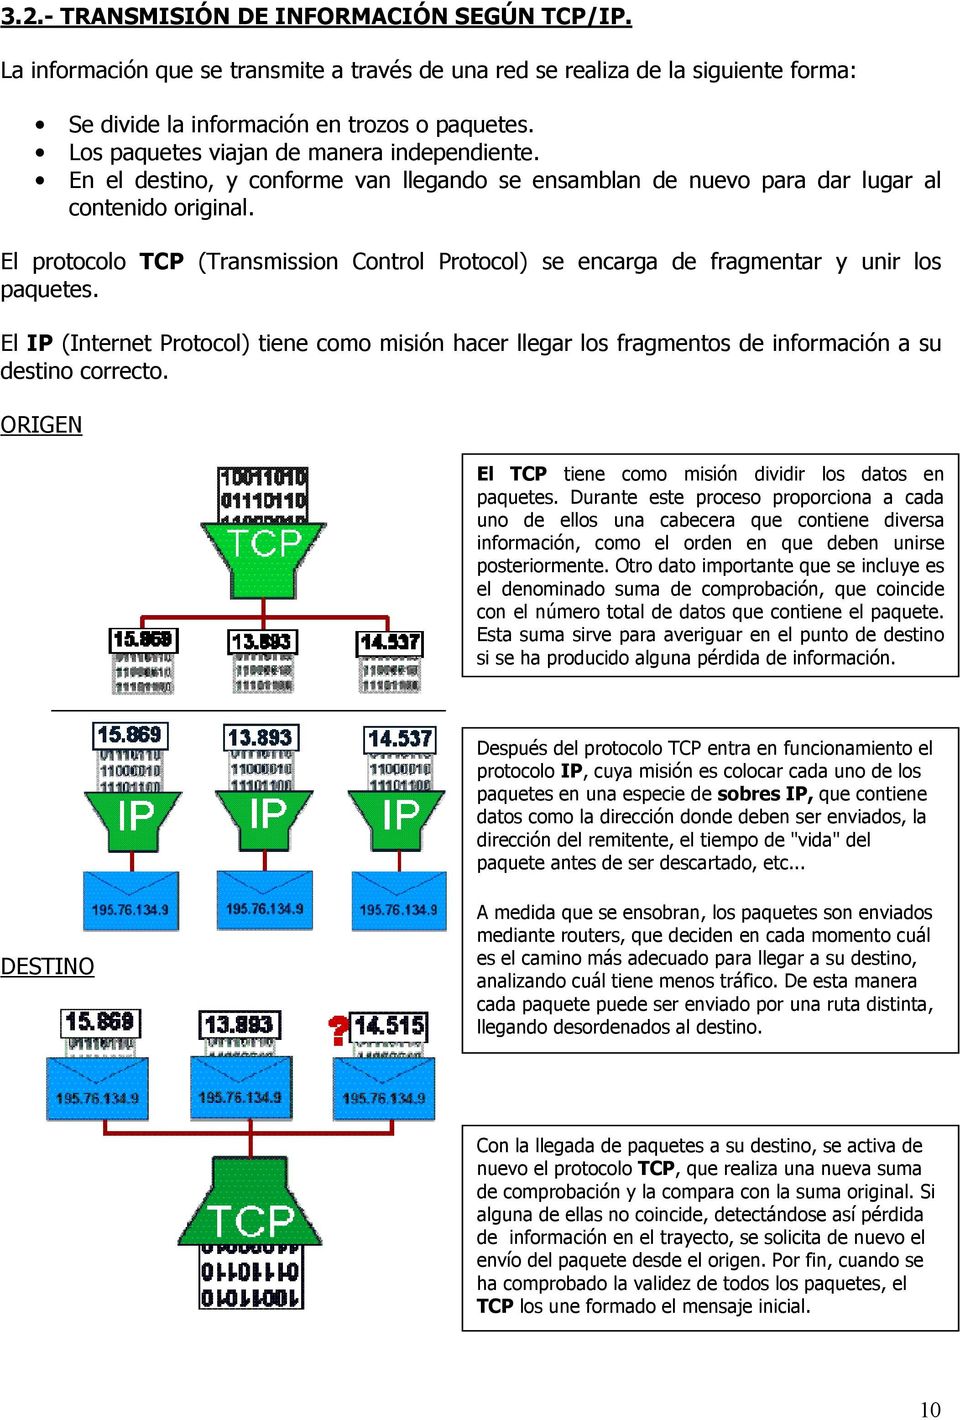 El protocolo TCP (Transmission Control Protocol) se encarga de fragmentar y unir los paquetes.